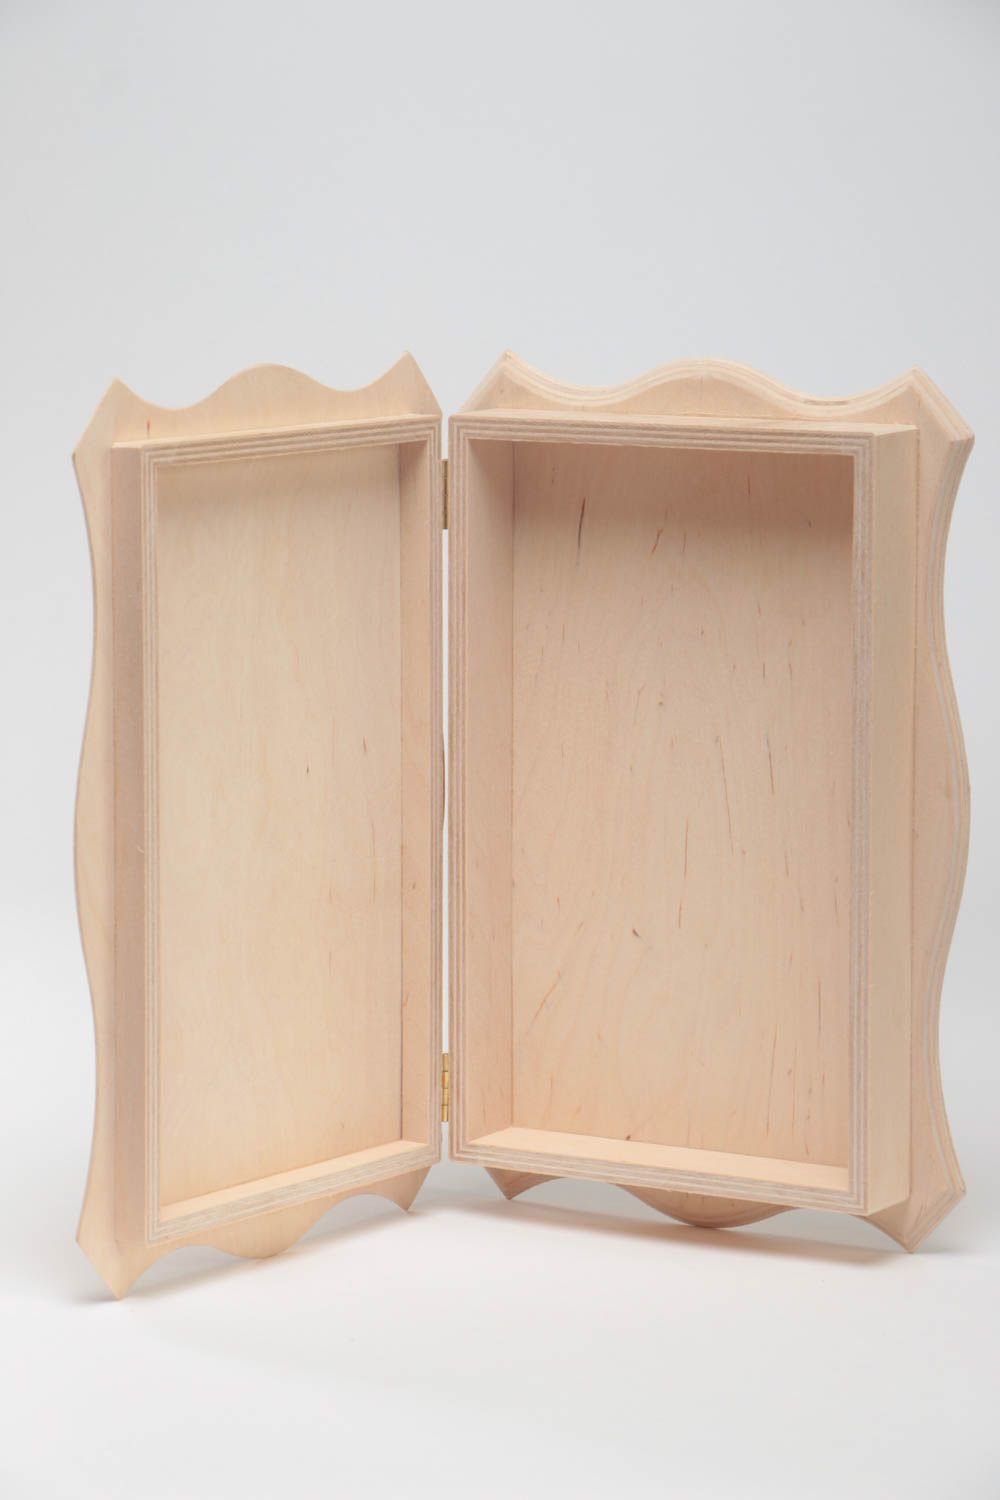 Boîte rectangulaire en bois brut pour serviettage ou à peindre faite main photo 4